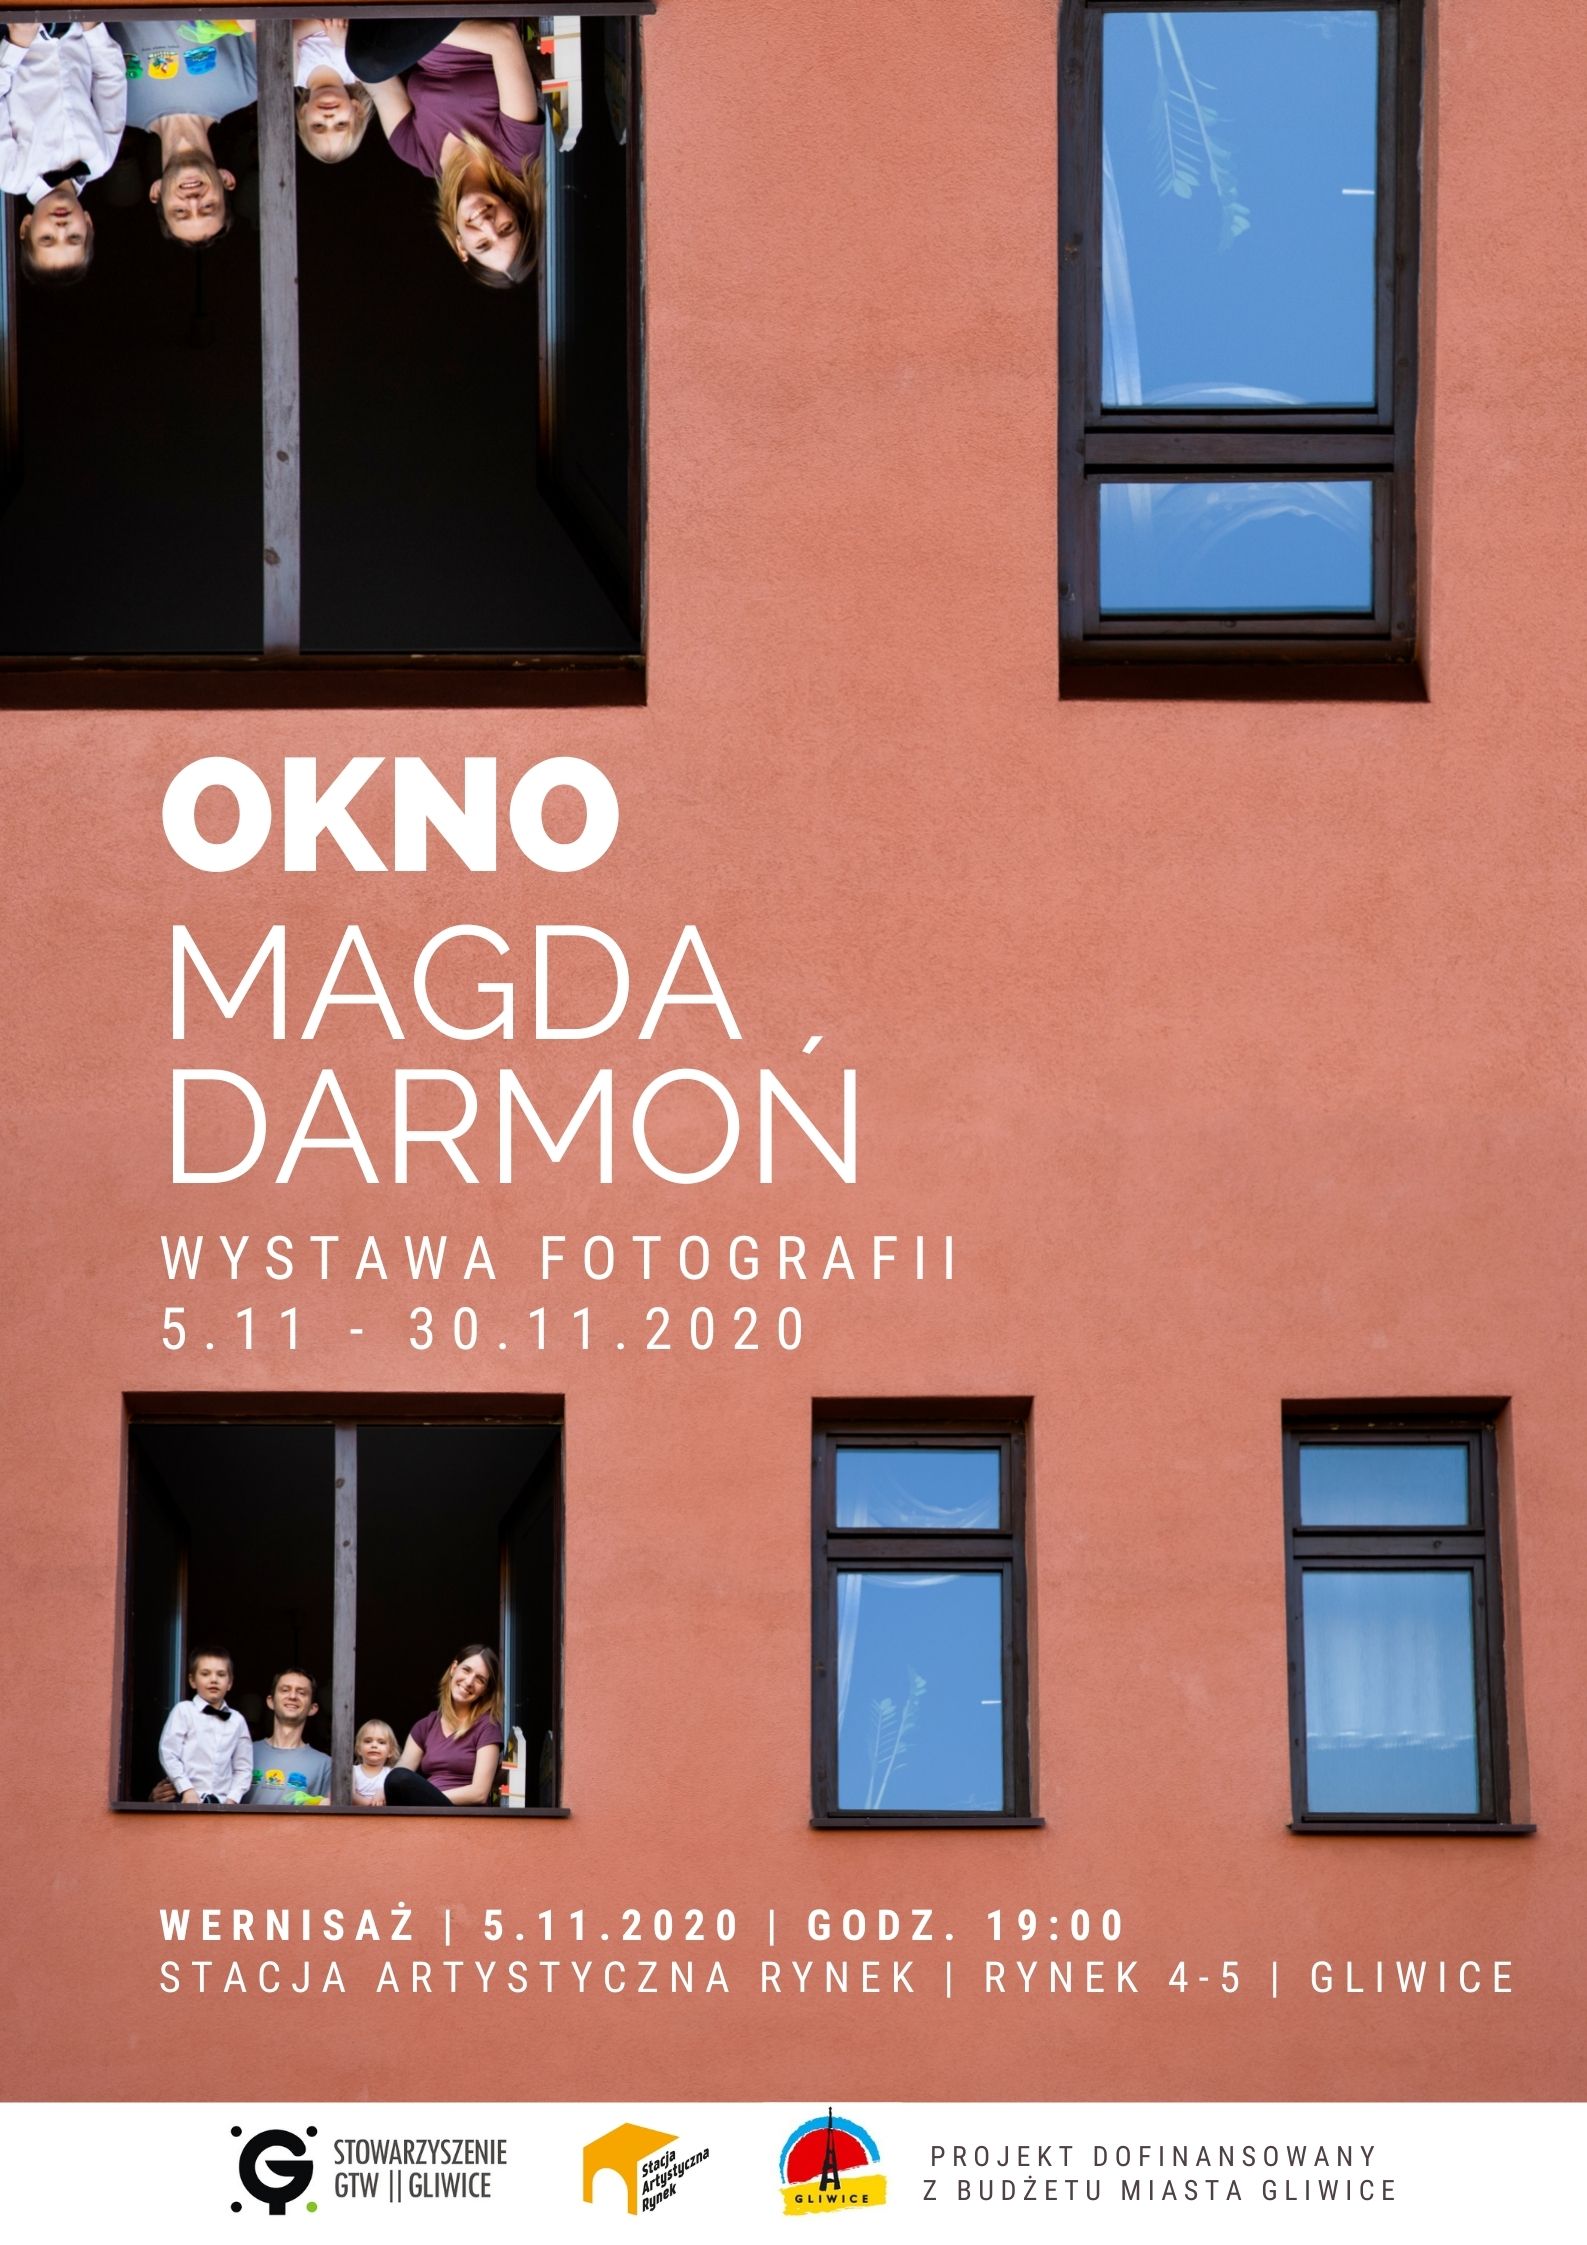 Okno, Magda Darmoń | wystawa fotografii